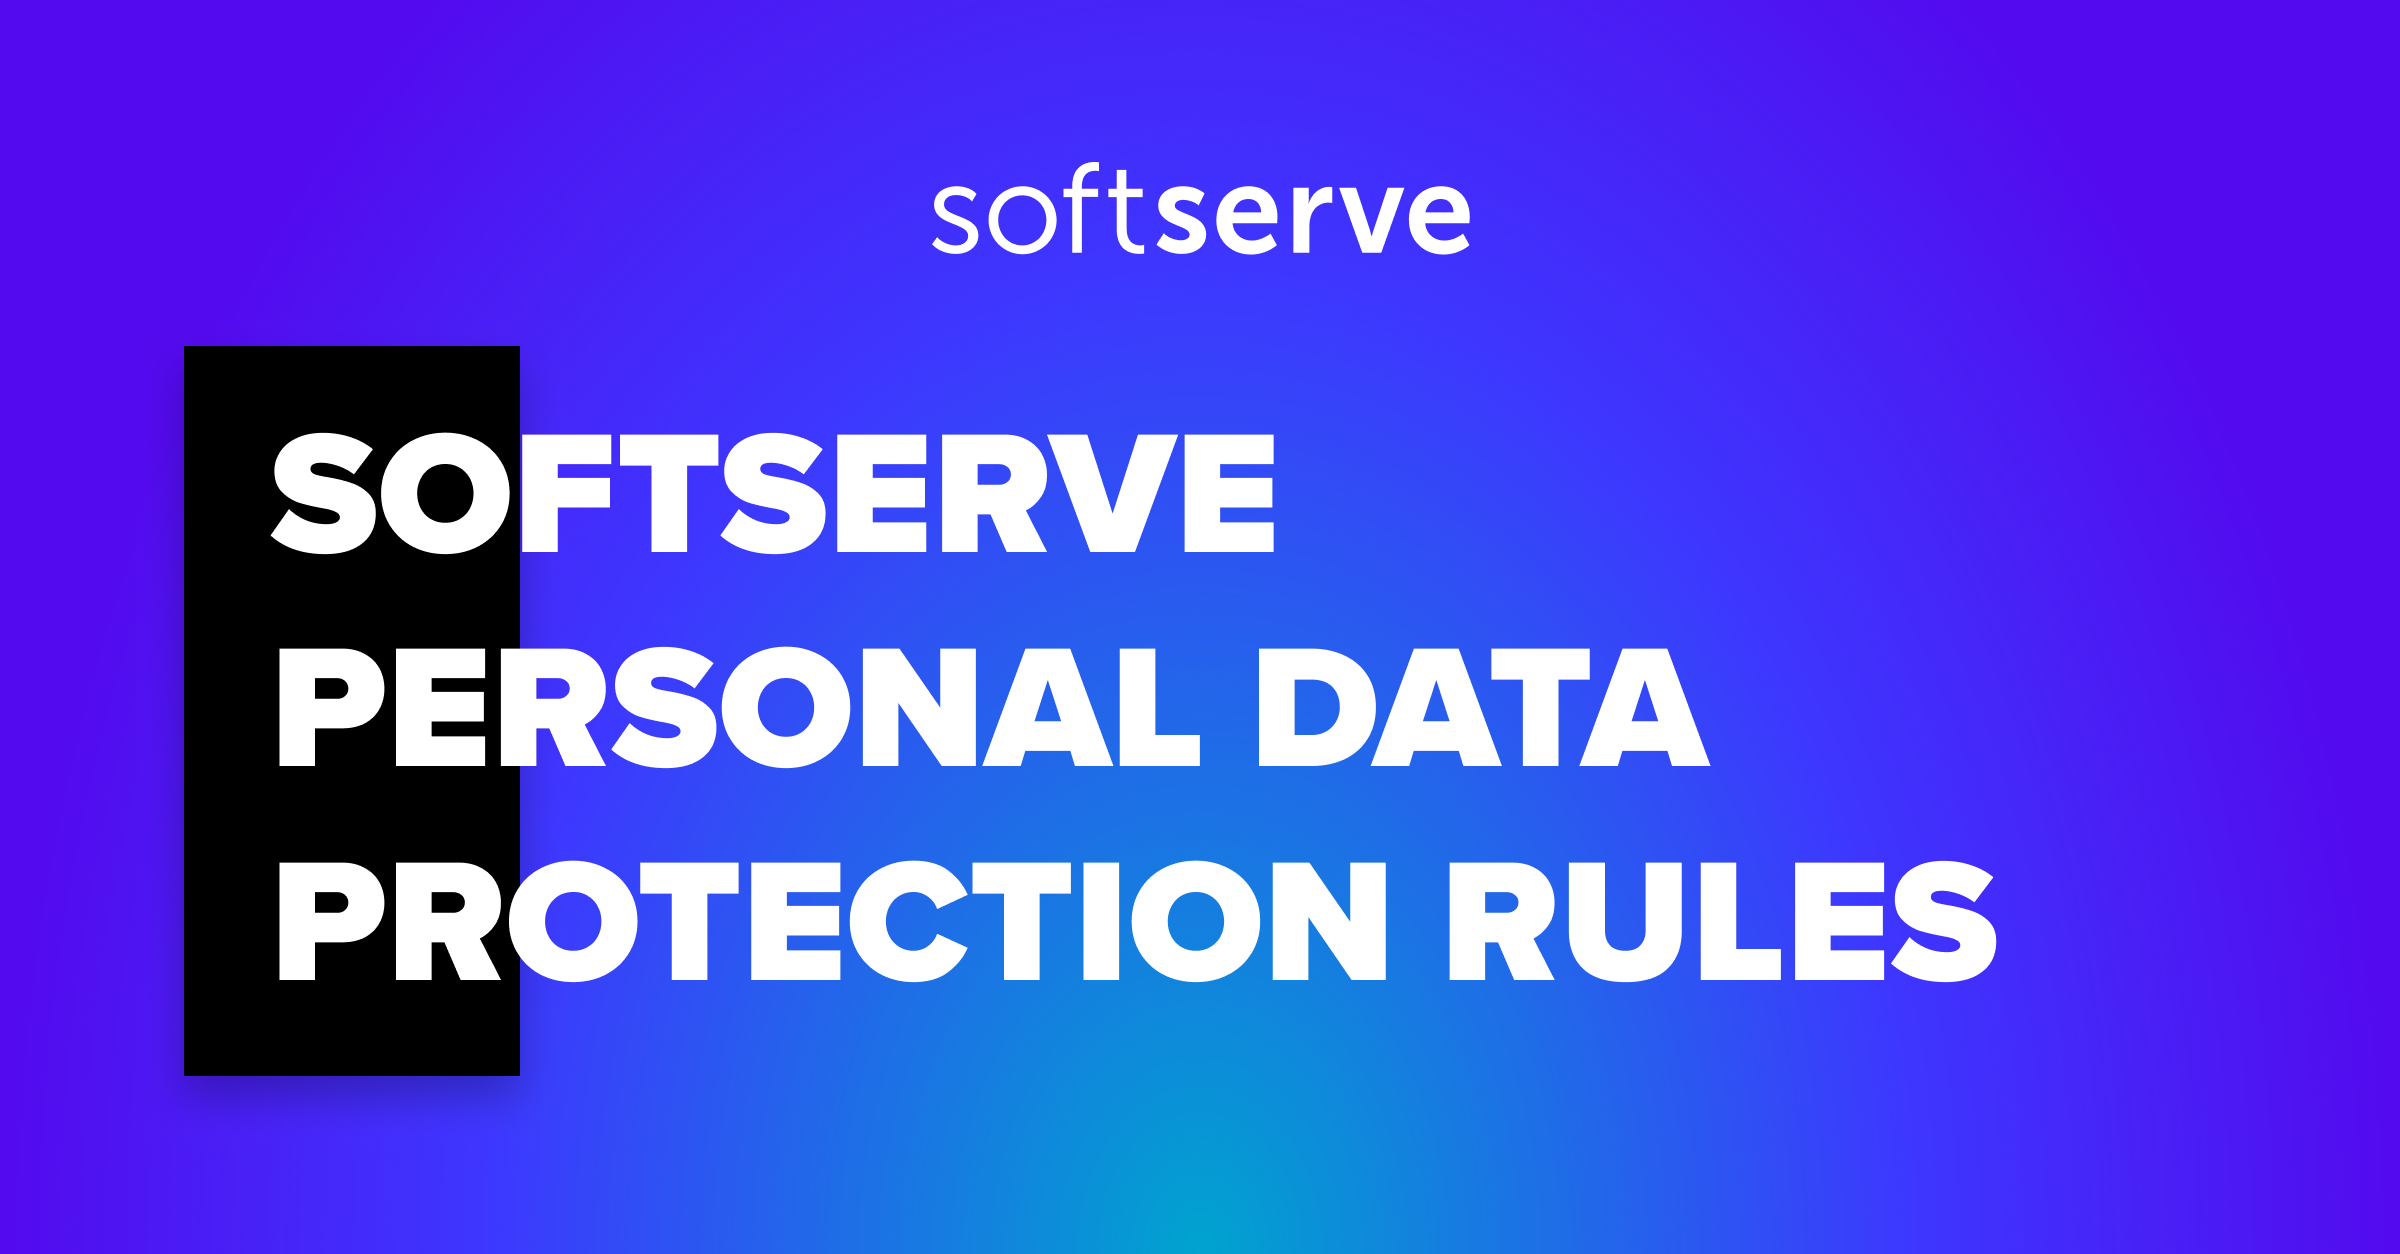 Aturan perlindungan data pribadi